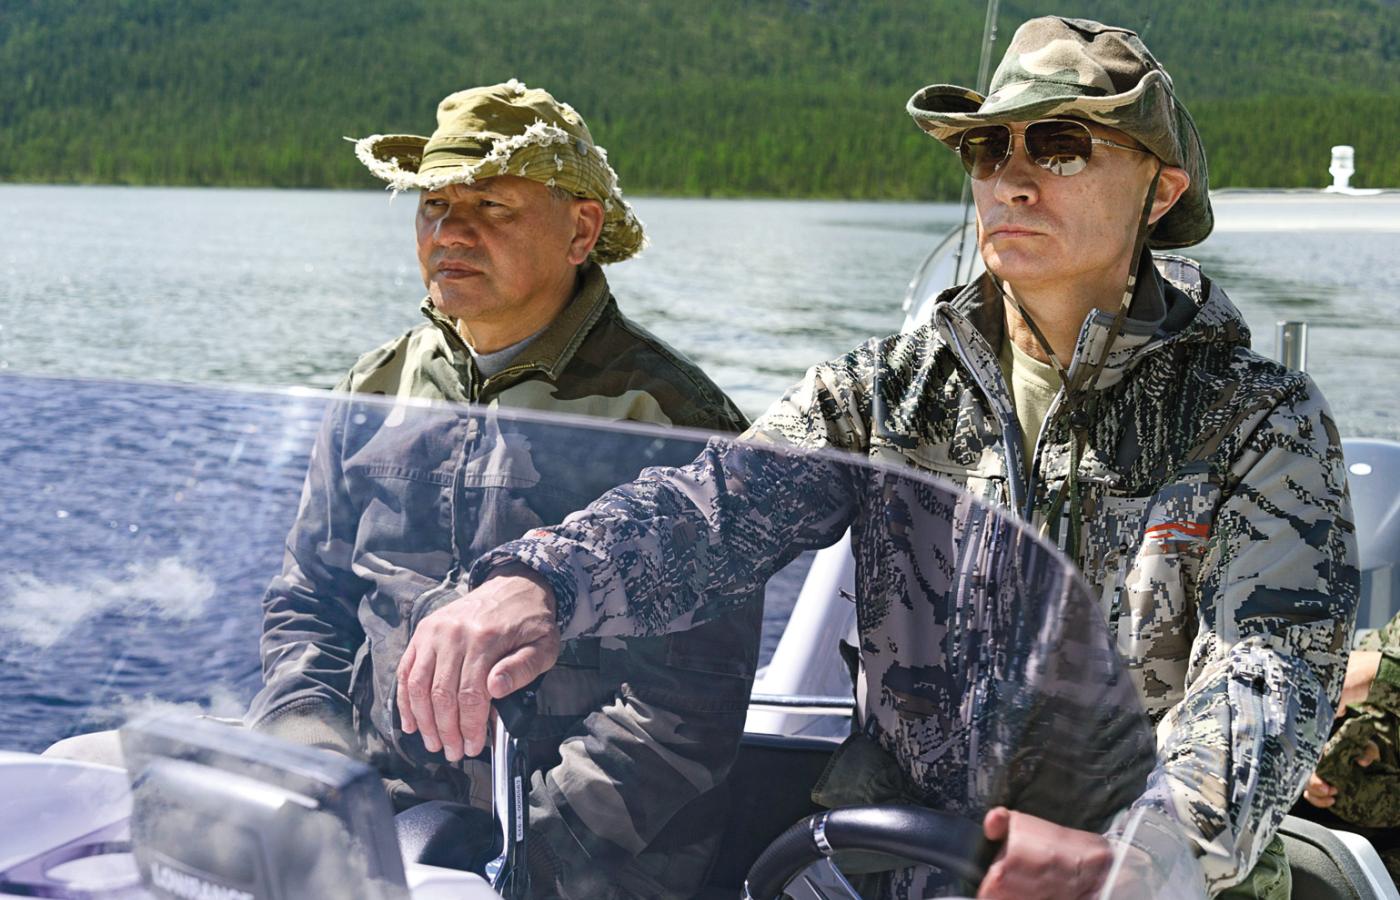 Szojgu od początku postawił na Putina i pomógł mu przejąć władzę. Wspólny wypad na ryby do Tuwy.